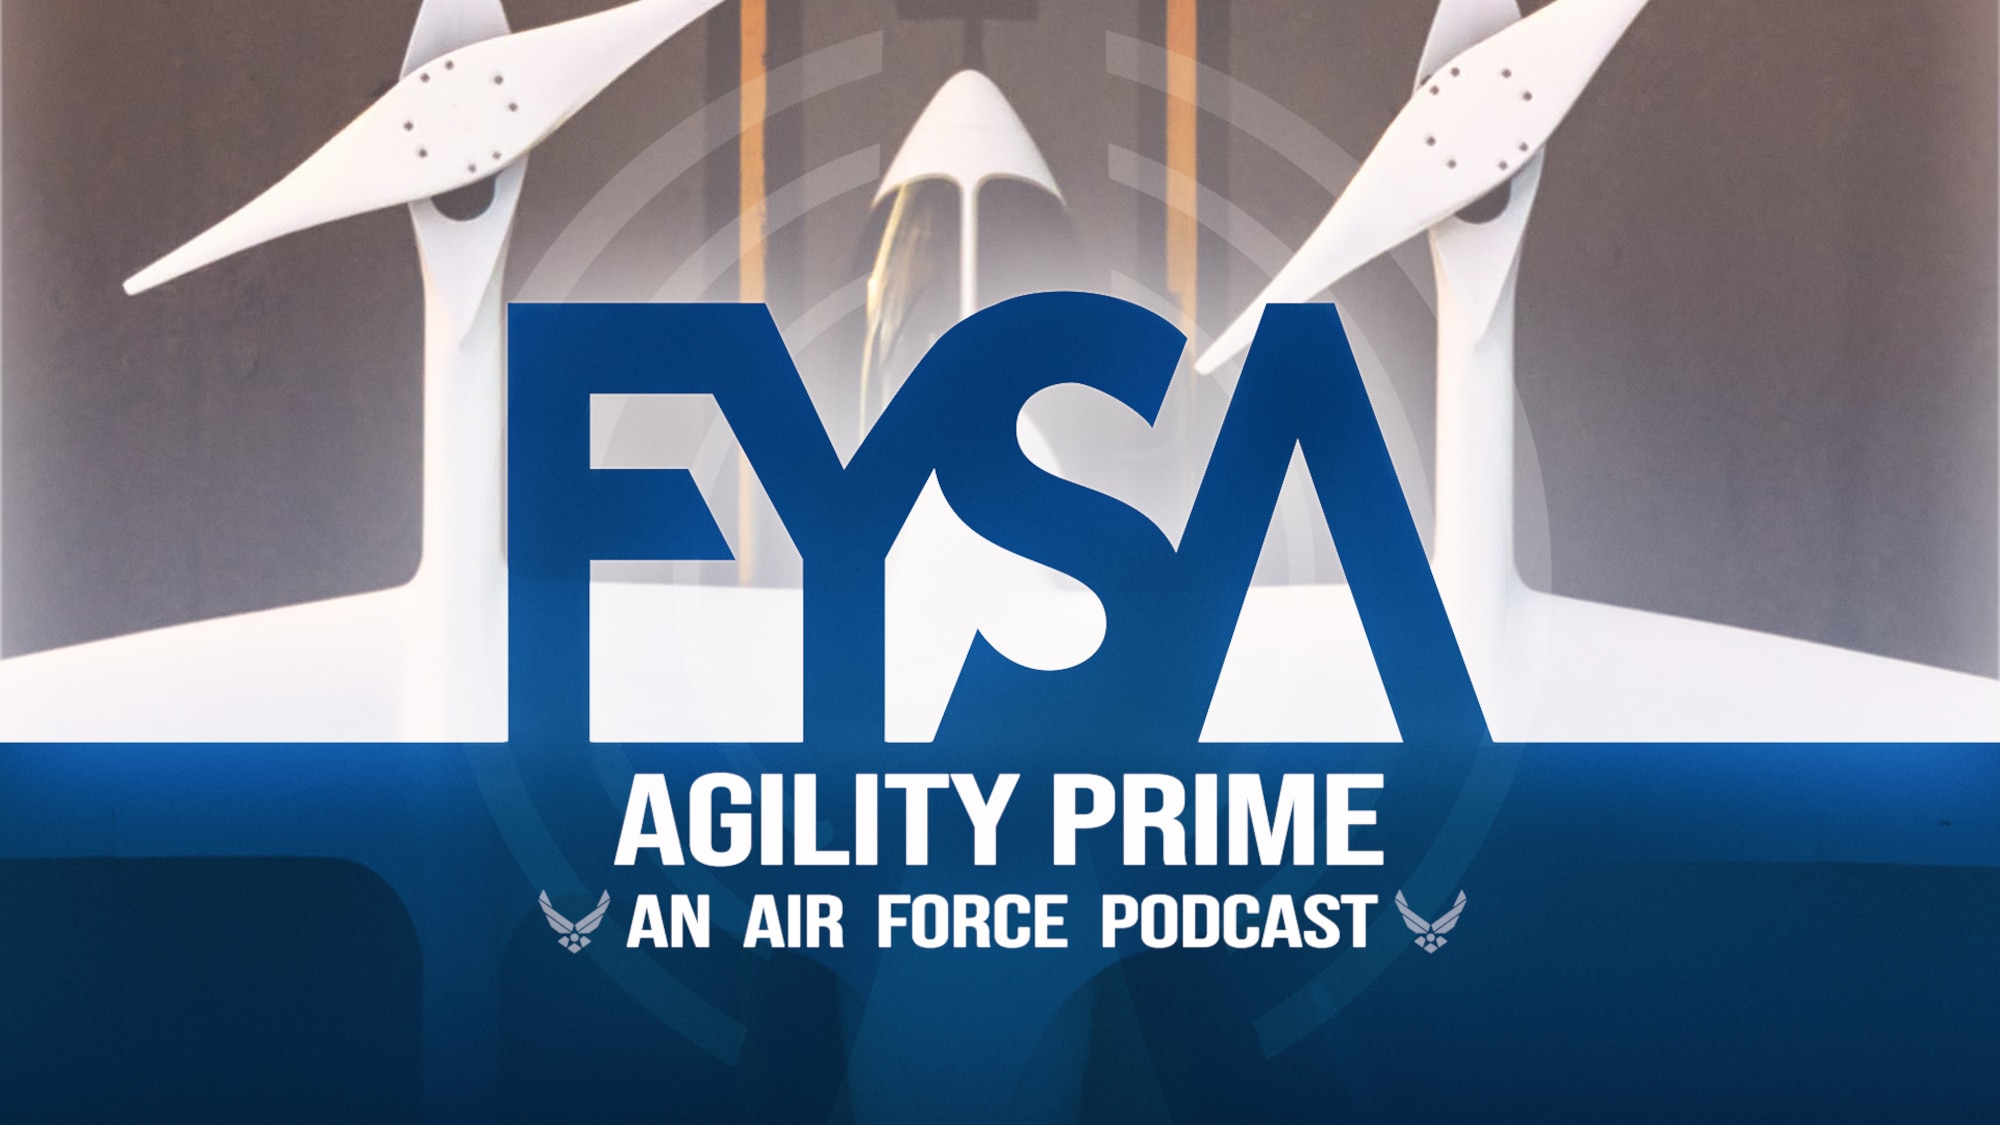 FYSA: Agility Prime